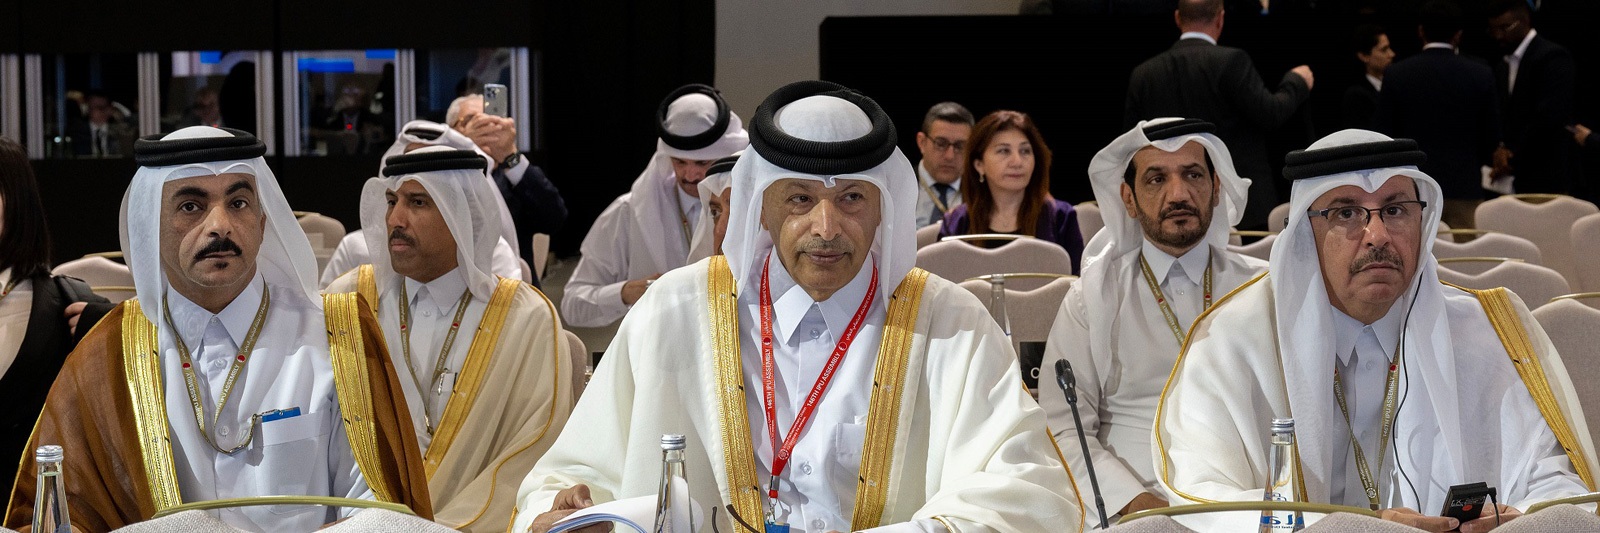 رئيس مجلس الشورى: قطر نموذج للتعايش السلمي ونشر قيم التسامح